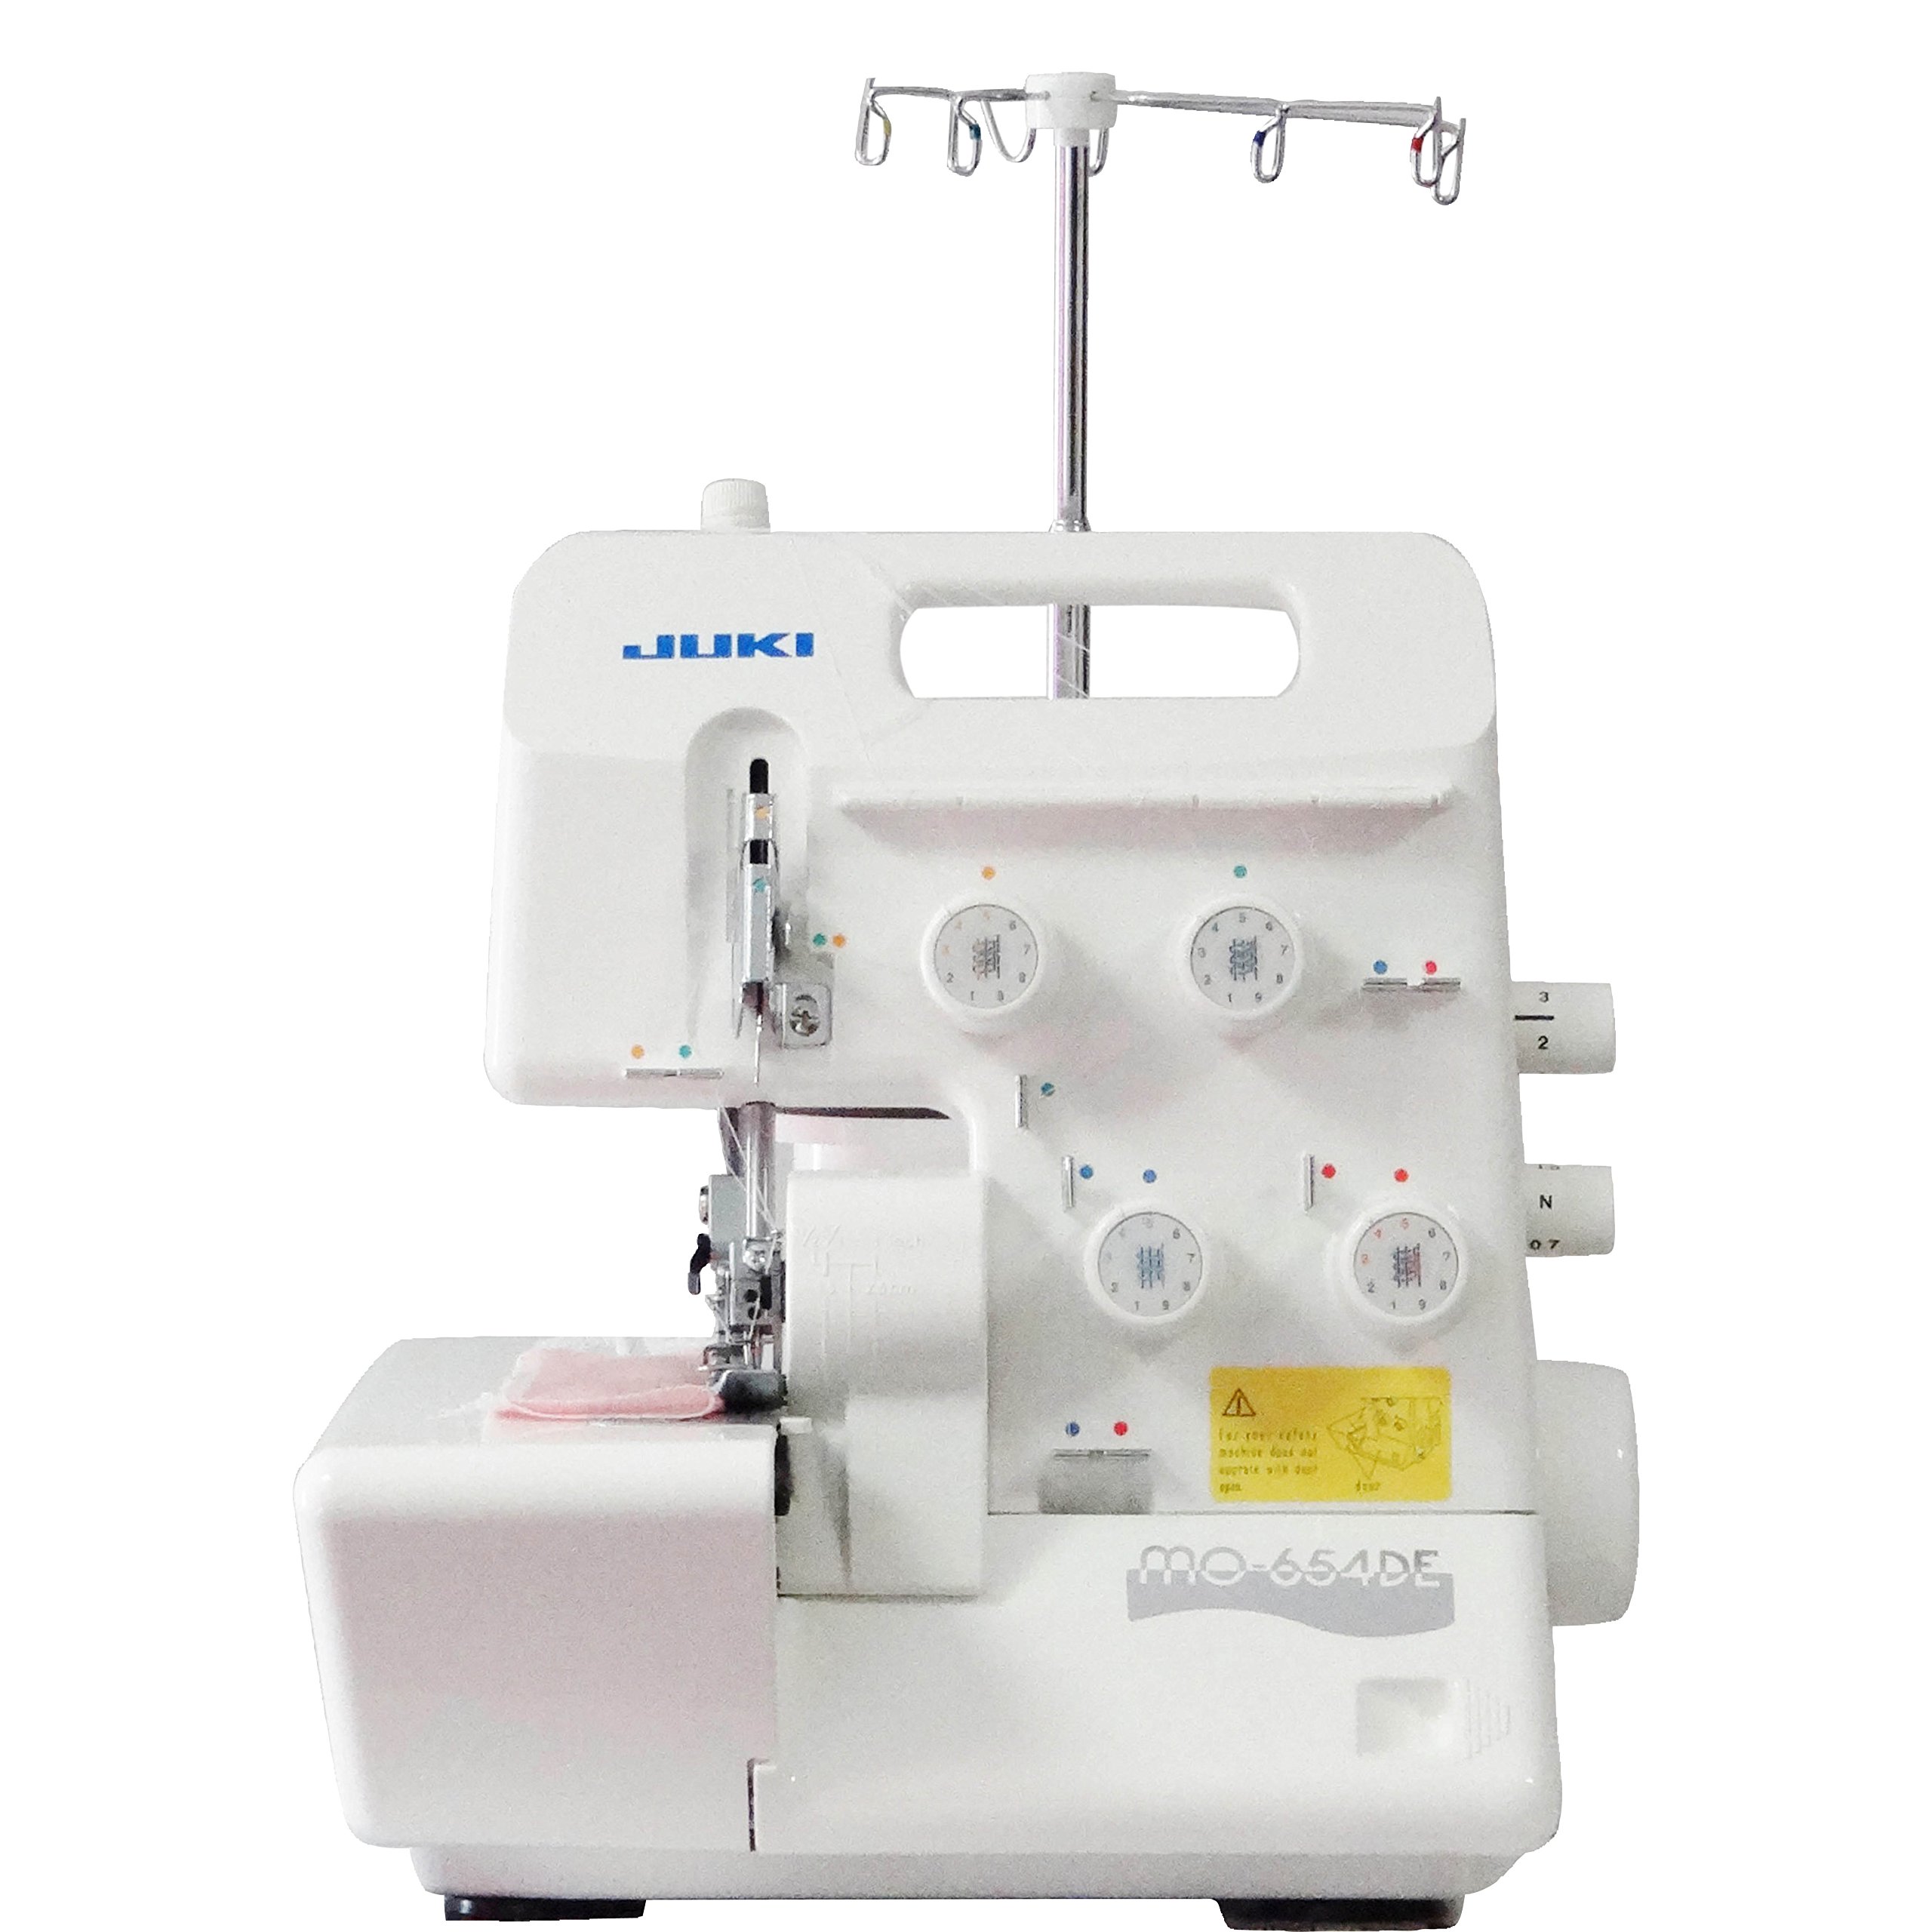 JUKI MO654DE Haushaltsmaschine, Aluminiumlegierung, Weiß, 34 x 27 x 29,5 cm